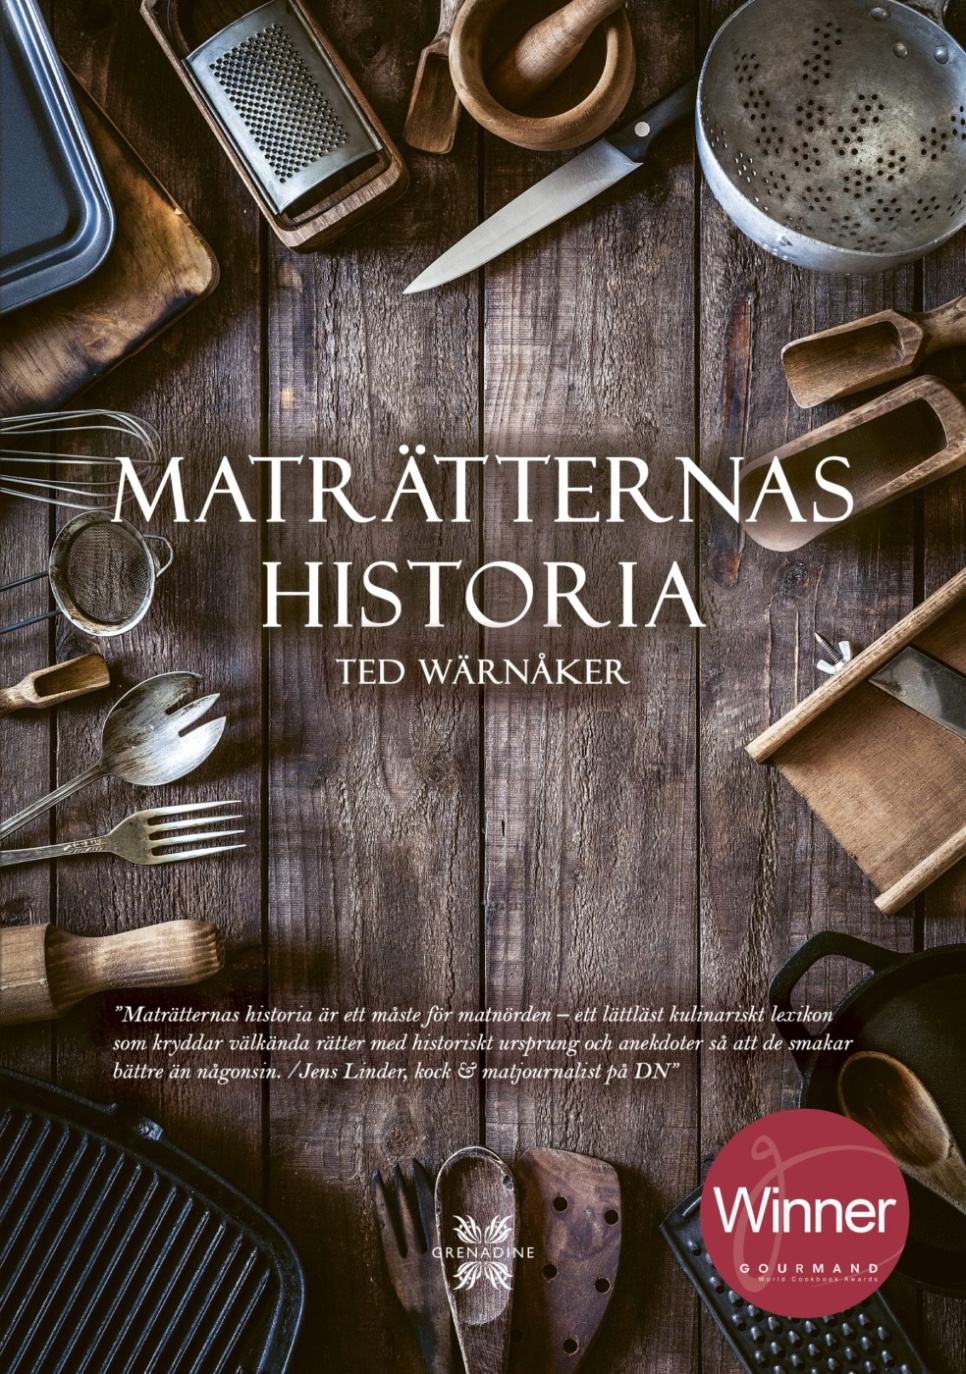 Maträtternas historia - Ted Wärnåker dans le groupe Cuisine / Livres de cuisine / Autres livres de cuisine l\'adresse The Kitchen Lab (1355-23680)